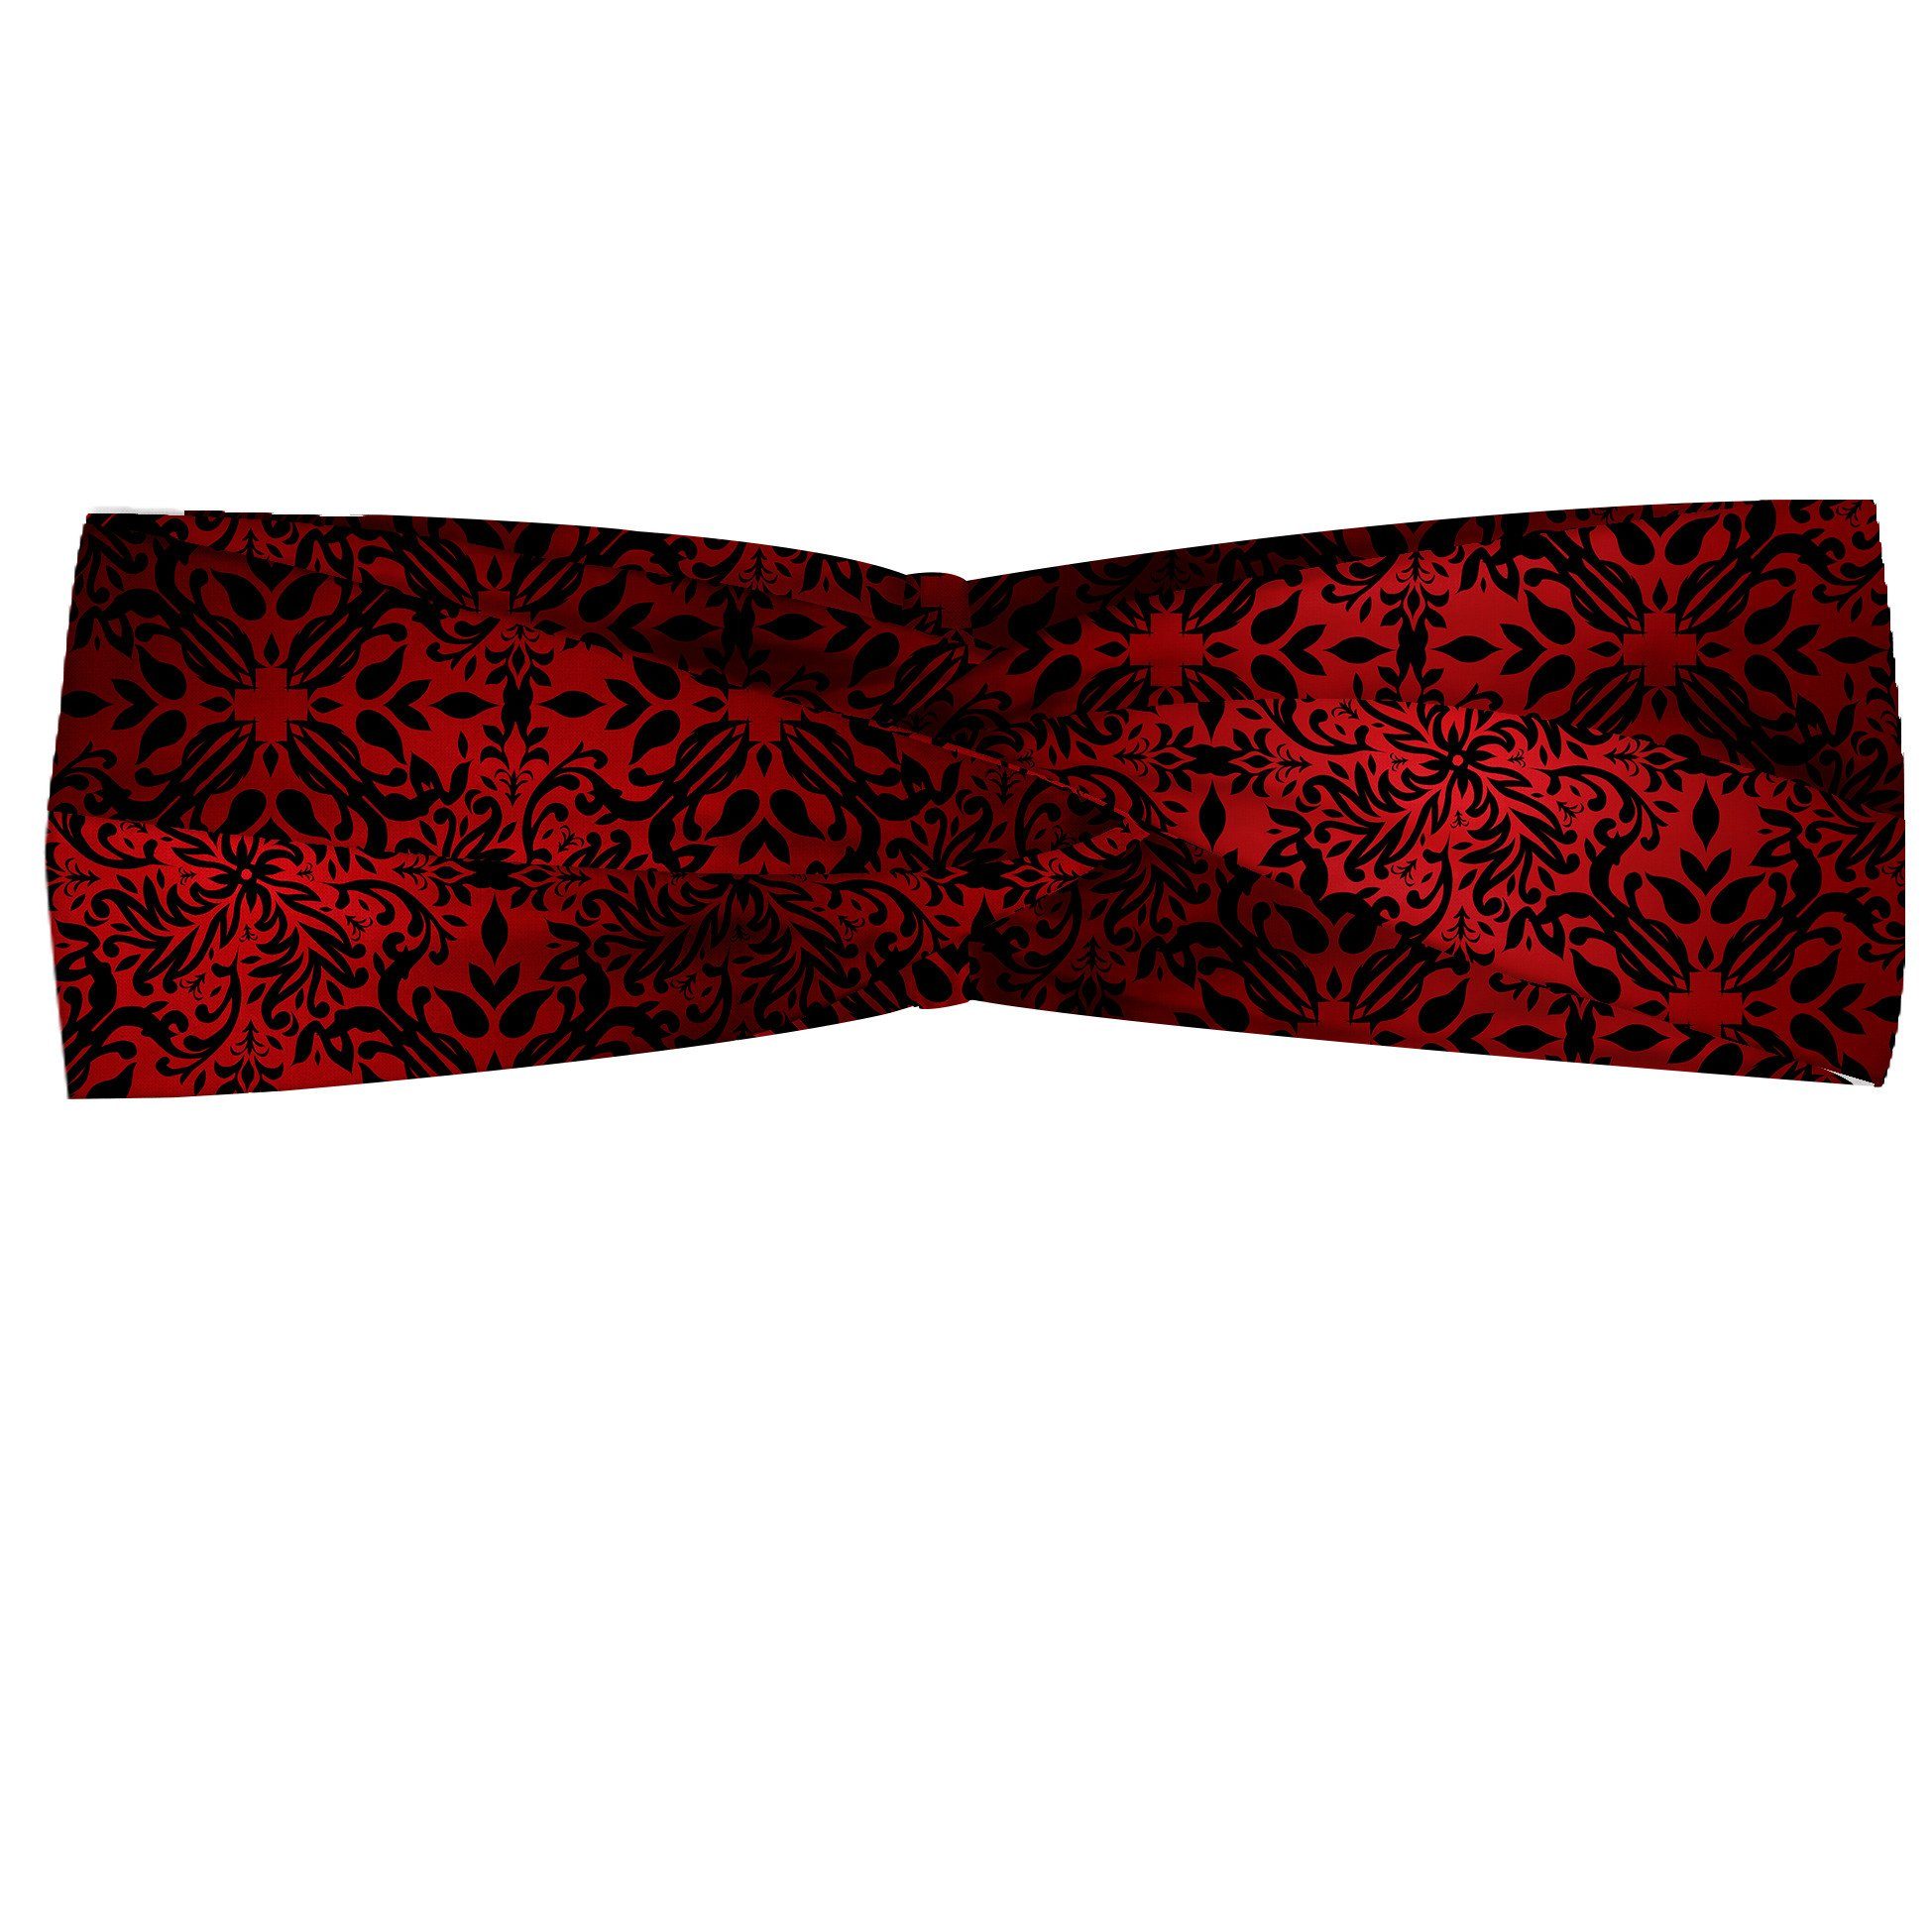 Abakuhaus Stirnband Elastisch und Angenehme alltags accessories rot schwarz Orient Blumen Blätter